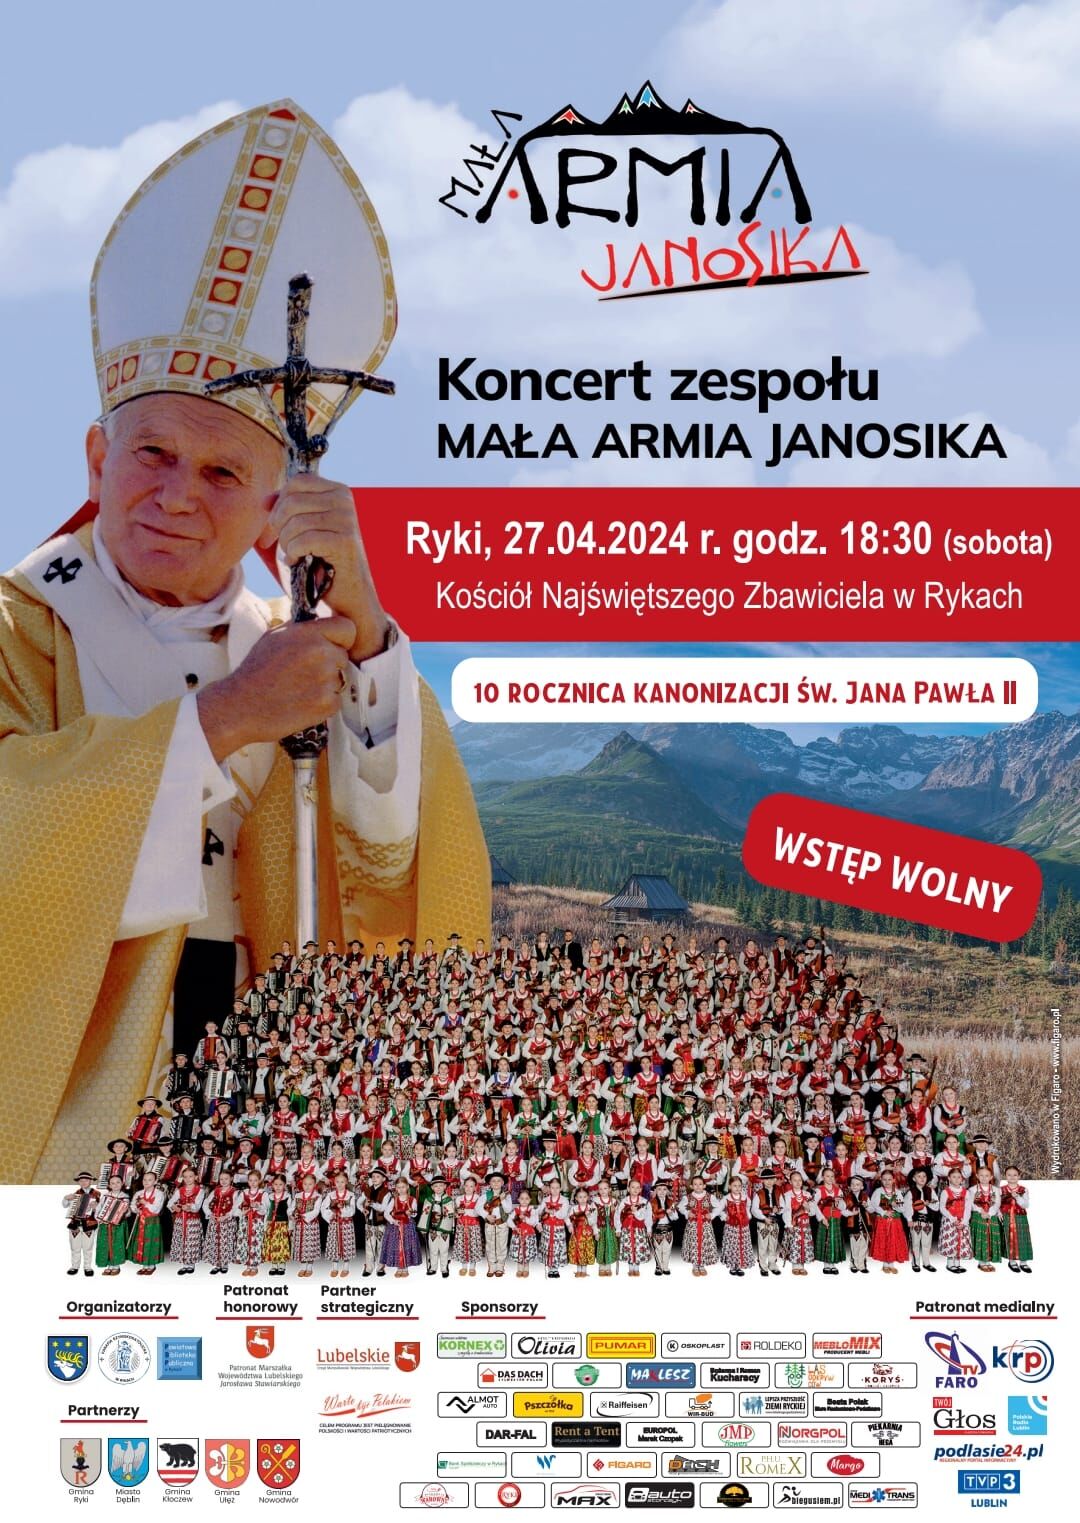 Plakat informacyjny o wydarzeniu - koncert zespołu Mała Armia Janosika Ryki 27 kwietnia 2024